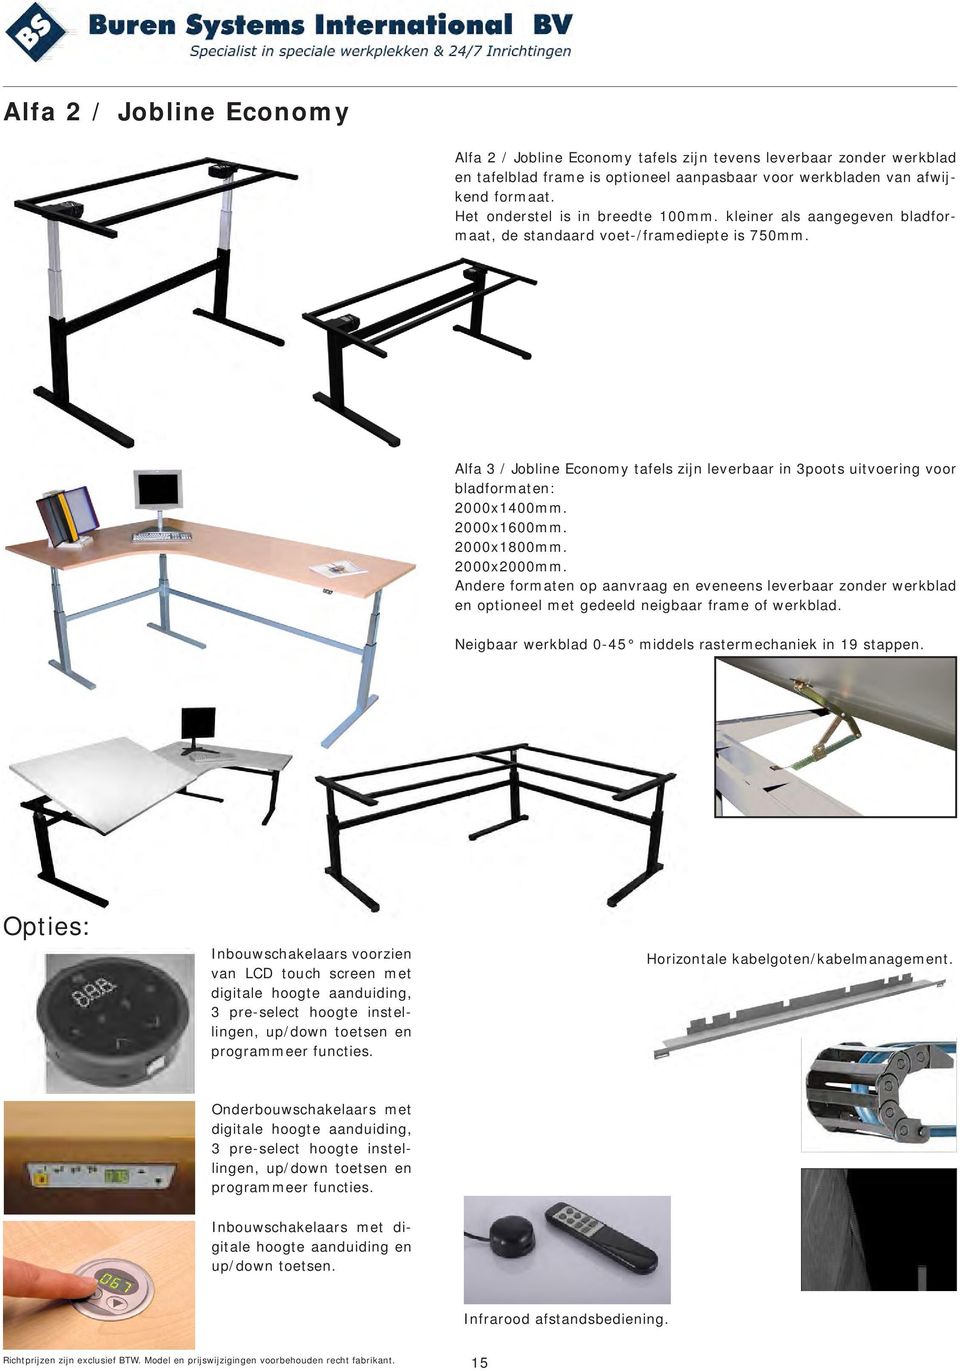 Alfa 3 / Jobline Economy tafels zijn leverbaar in 3poots uitvoering voor bladformaten: 2000x1400mm. 2000x1600mm. 2000x1800mm. 2000x2000mm.